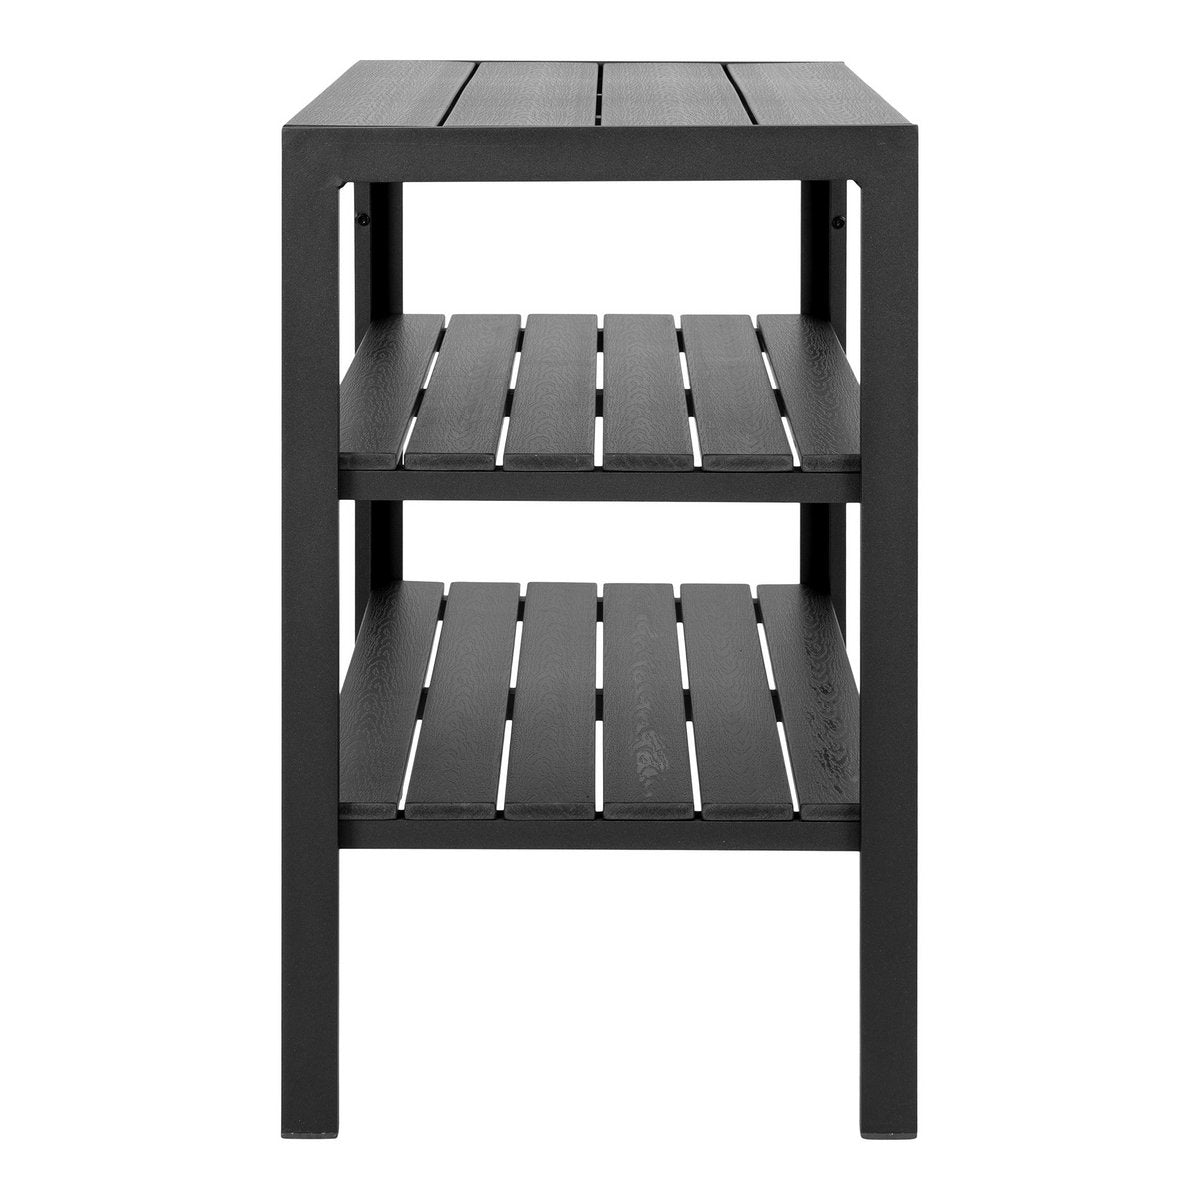 Taormina Theewagen - Theewagen, aluminium/niet-hout, zwart, 3 planken